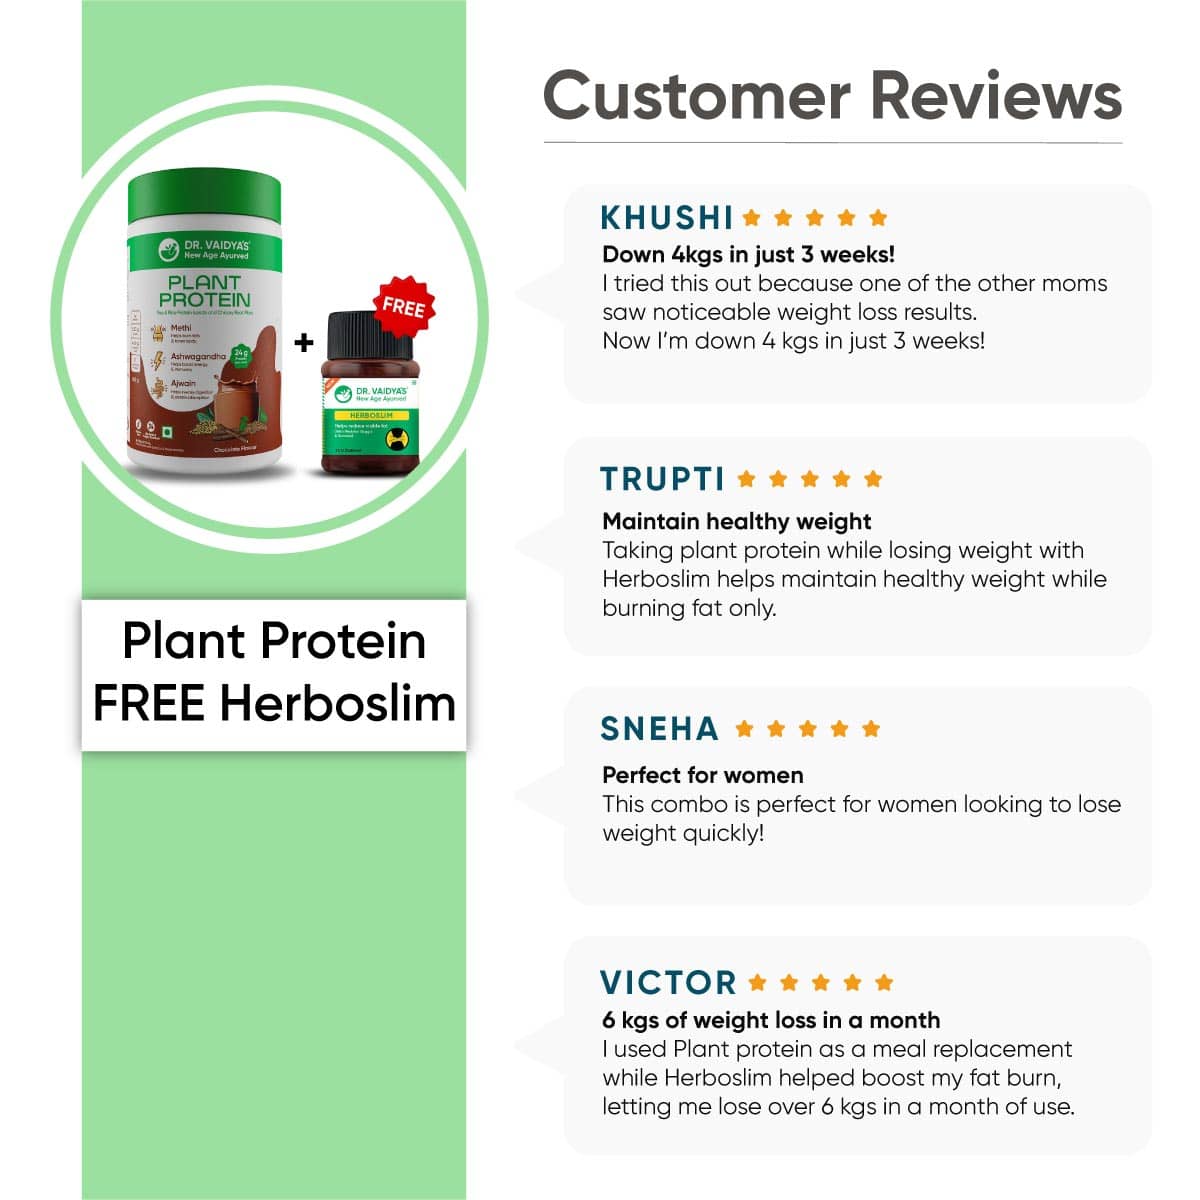 Buy Plant Protein & Get Herboslim FREE